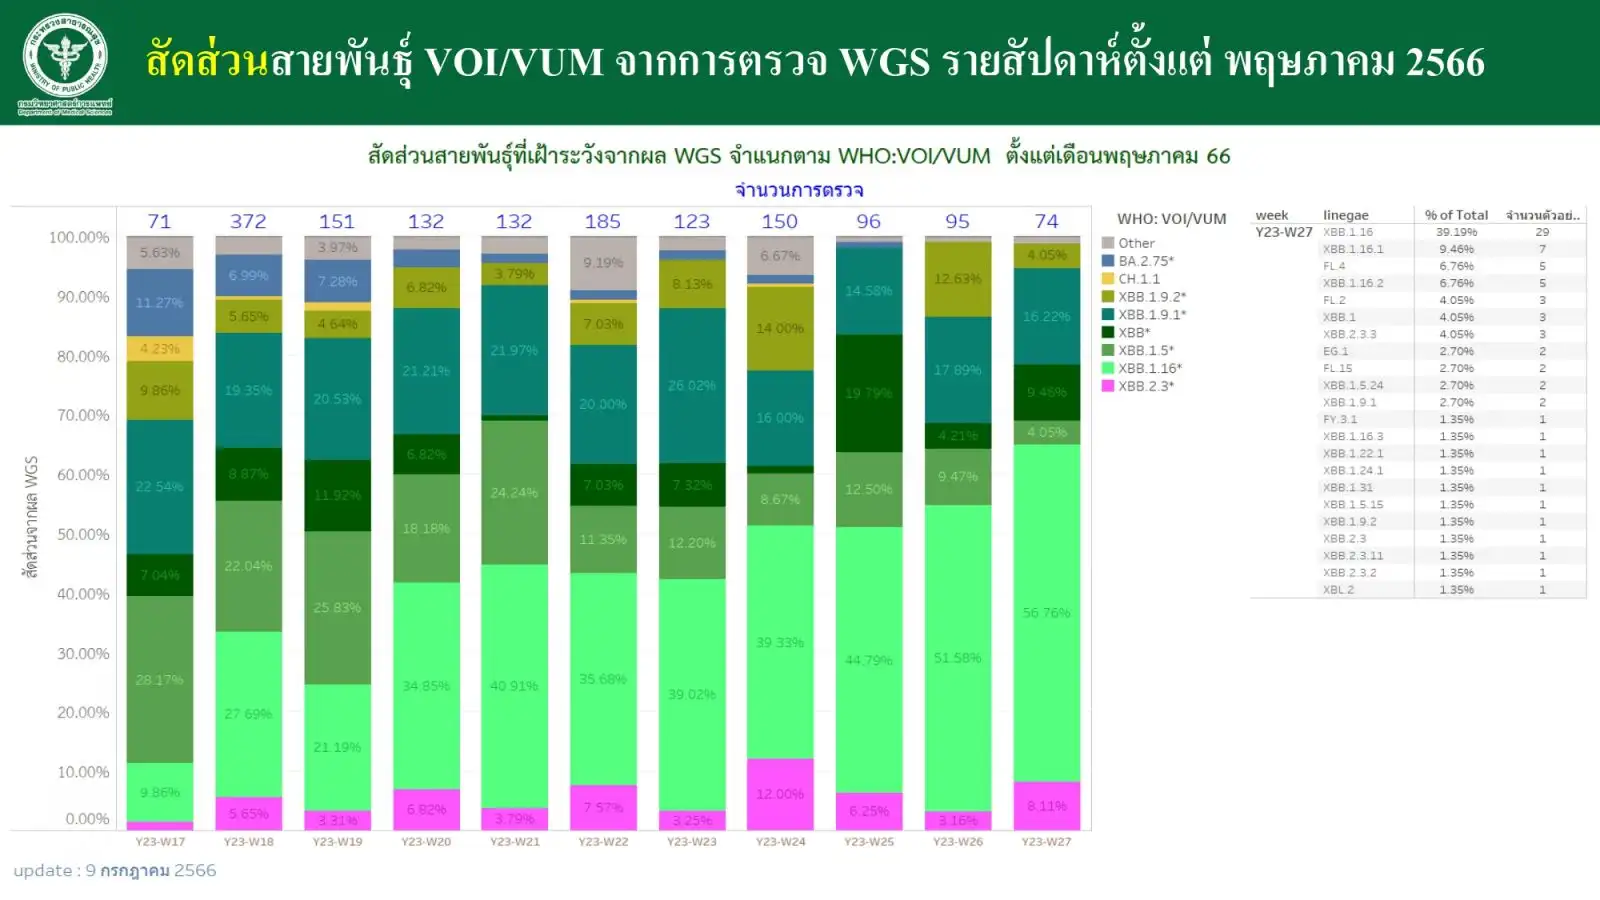 กรมวิทย์ฯ เผยไทยพบสายพันธุ์ EG.5.1 แล้ว 5 ราย ยังไม่พบข้อมูลความรุนแรง HealthServ